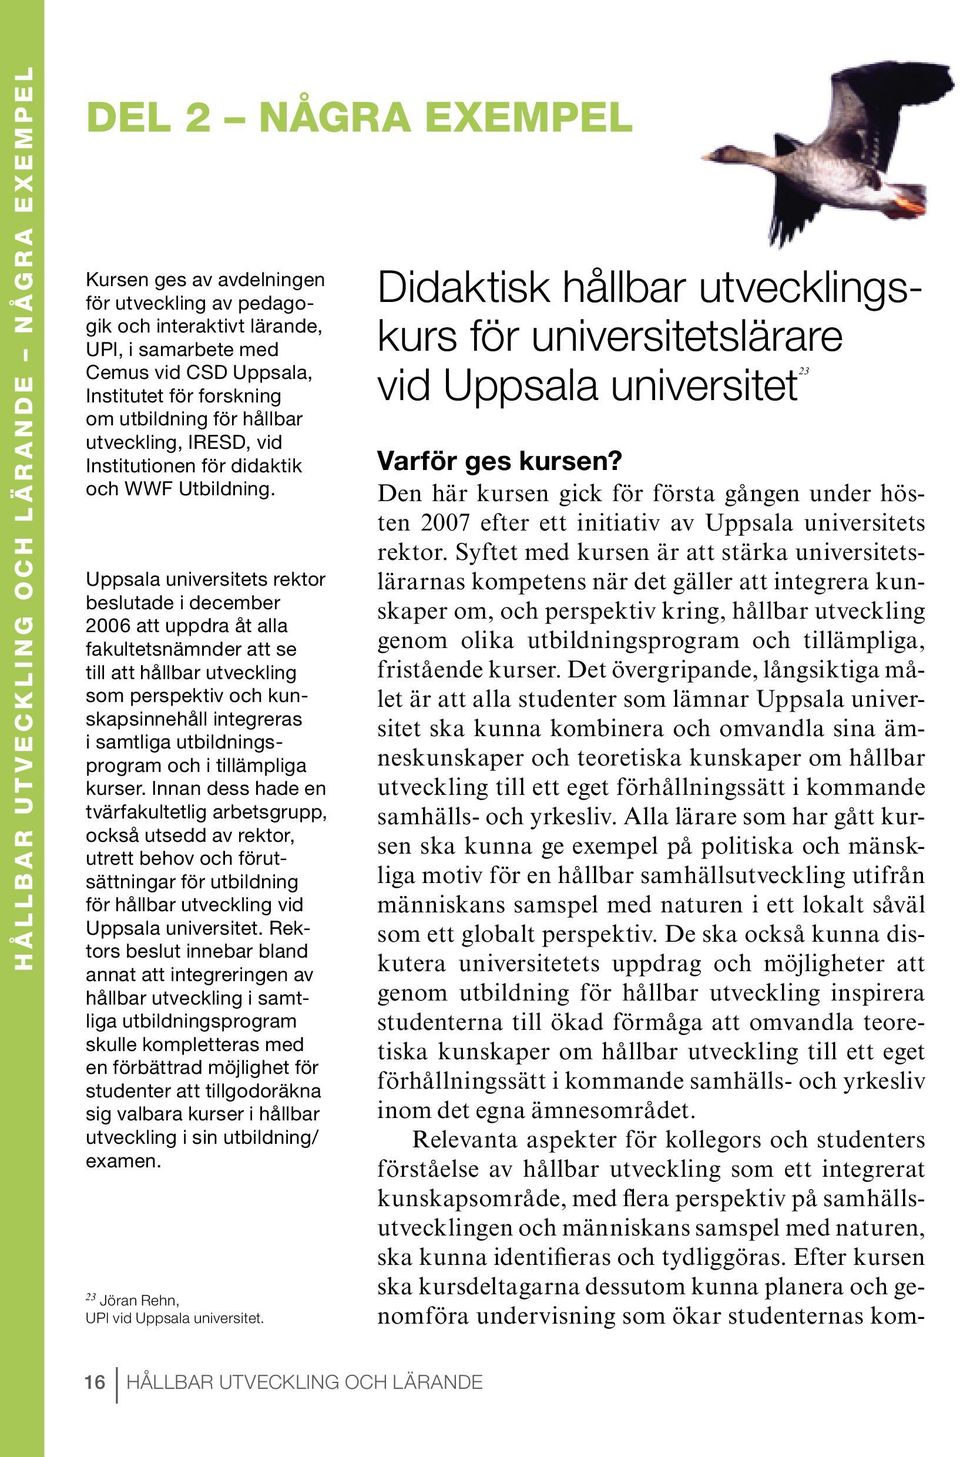 Uppsala universitets rektor beslutade i december 2006 att uppdra åt alla fakultetsnämnder att se till att hållbar utveckling som perspektiv och kunskapsinnehåll integreras i samtliga